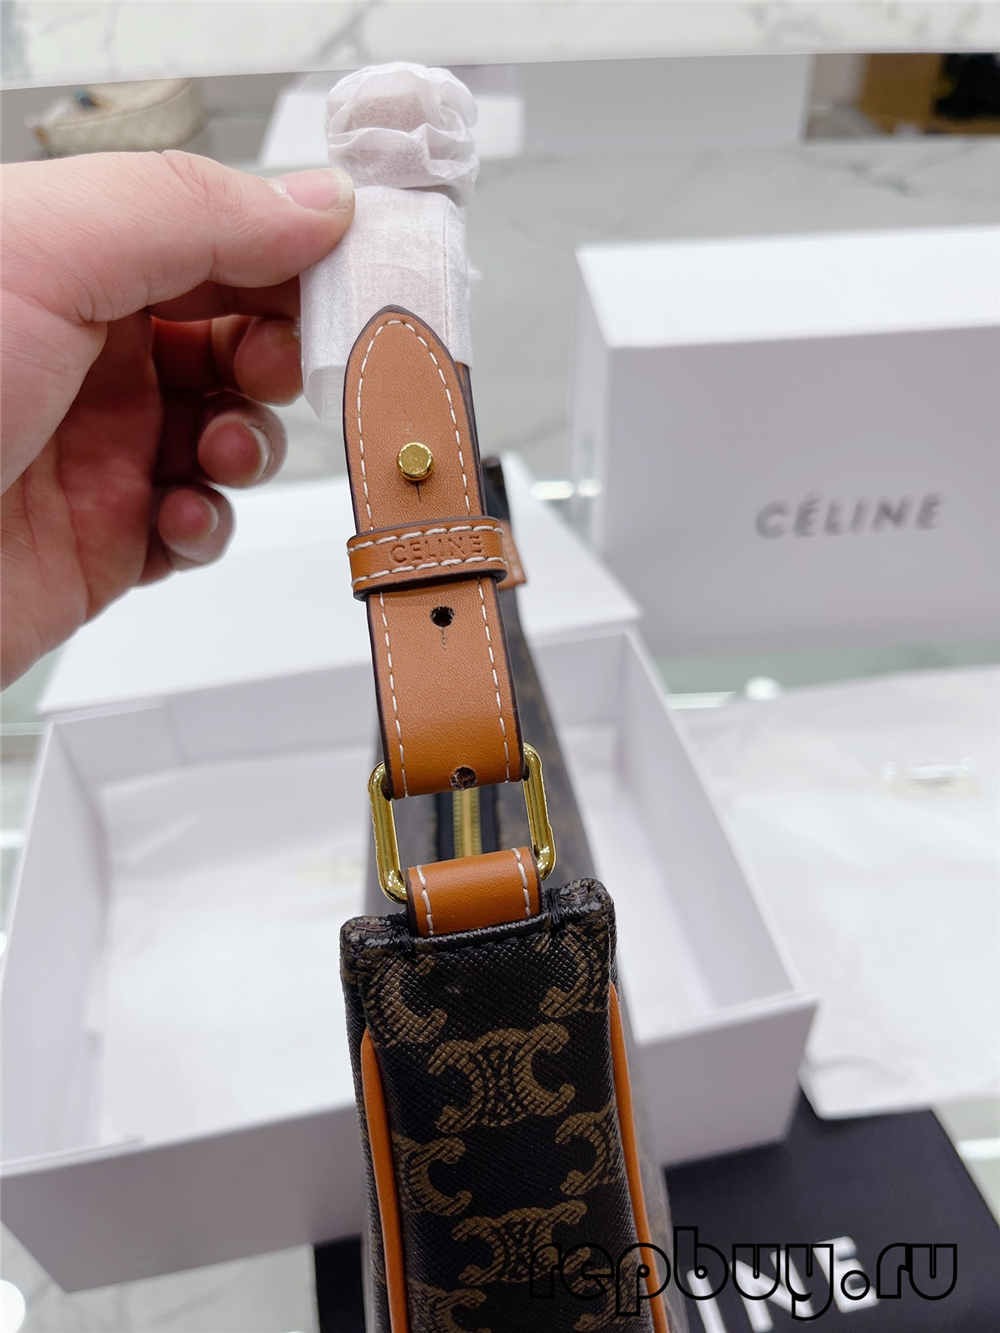 Селин Ава Најквалитетни реплика чанти (најнови 2022) - Онлајн продавница за лажни чанти Луј Витон со најдобар квалитет, дизајнерска торба со реплика ru